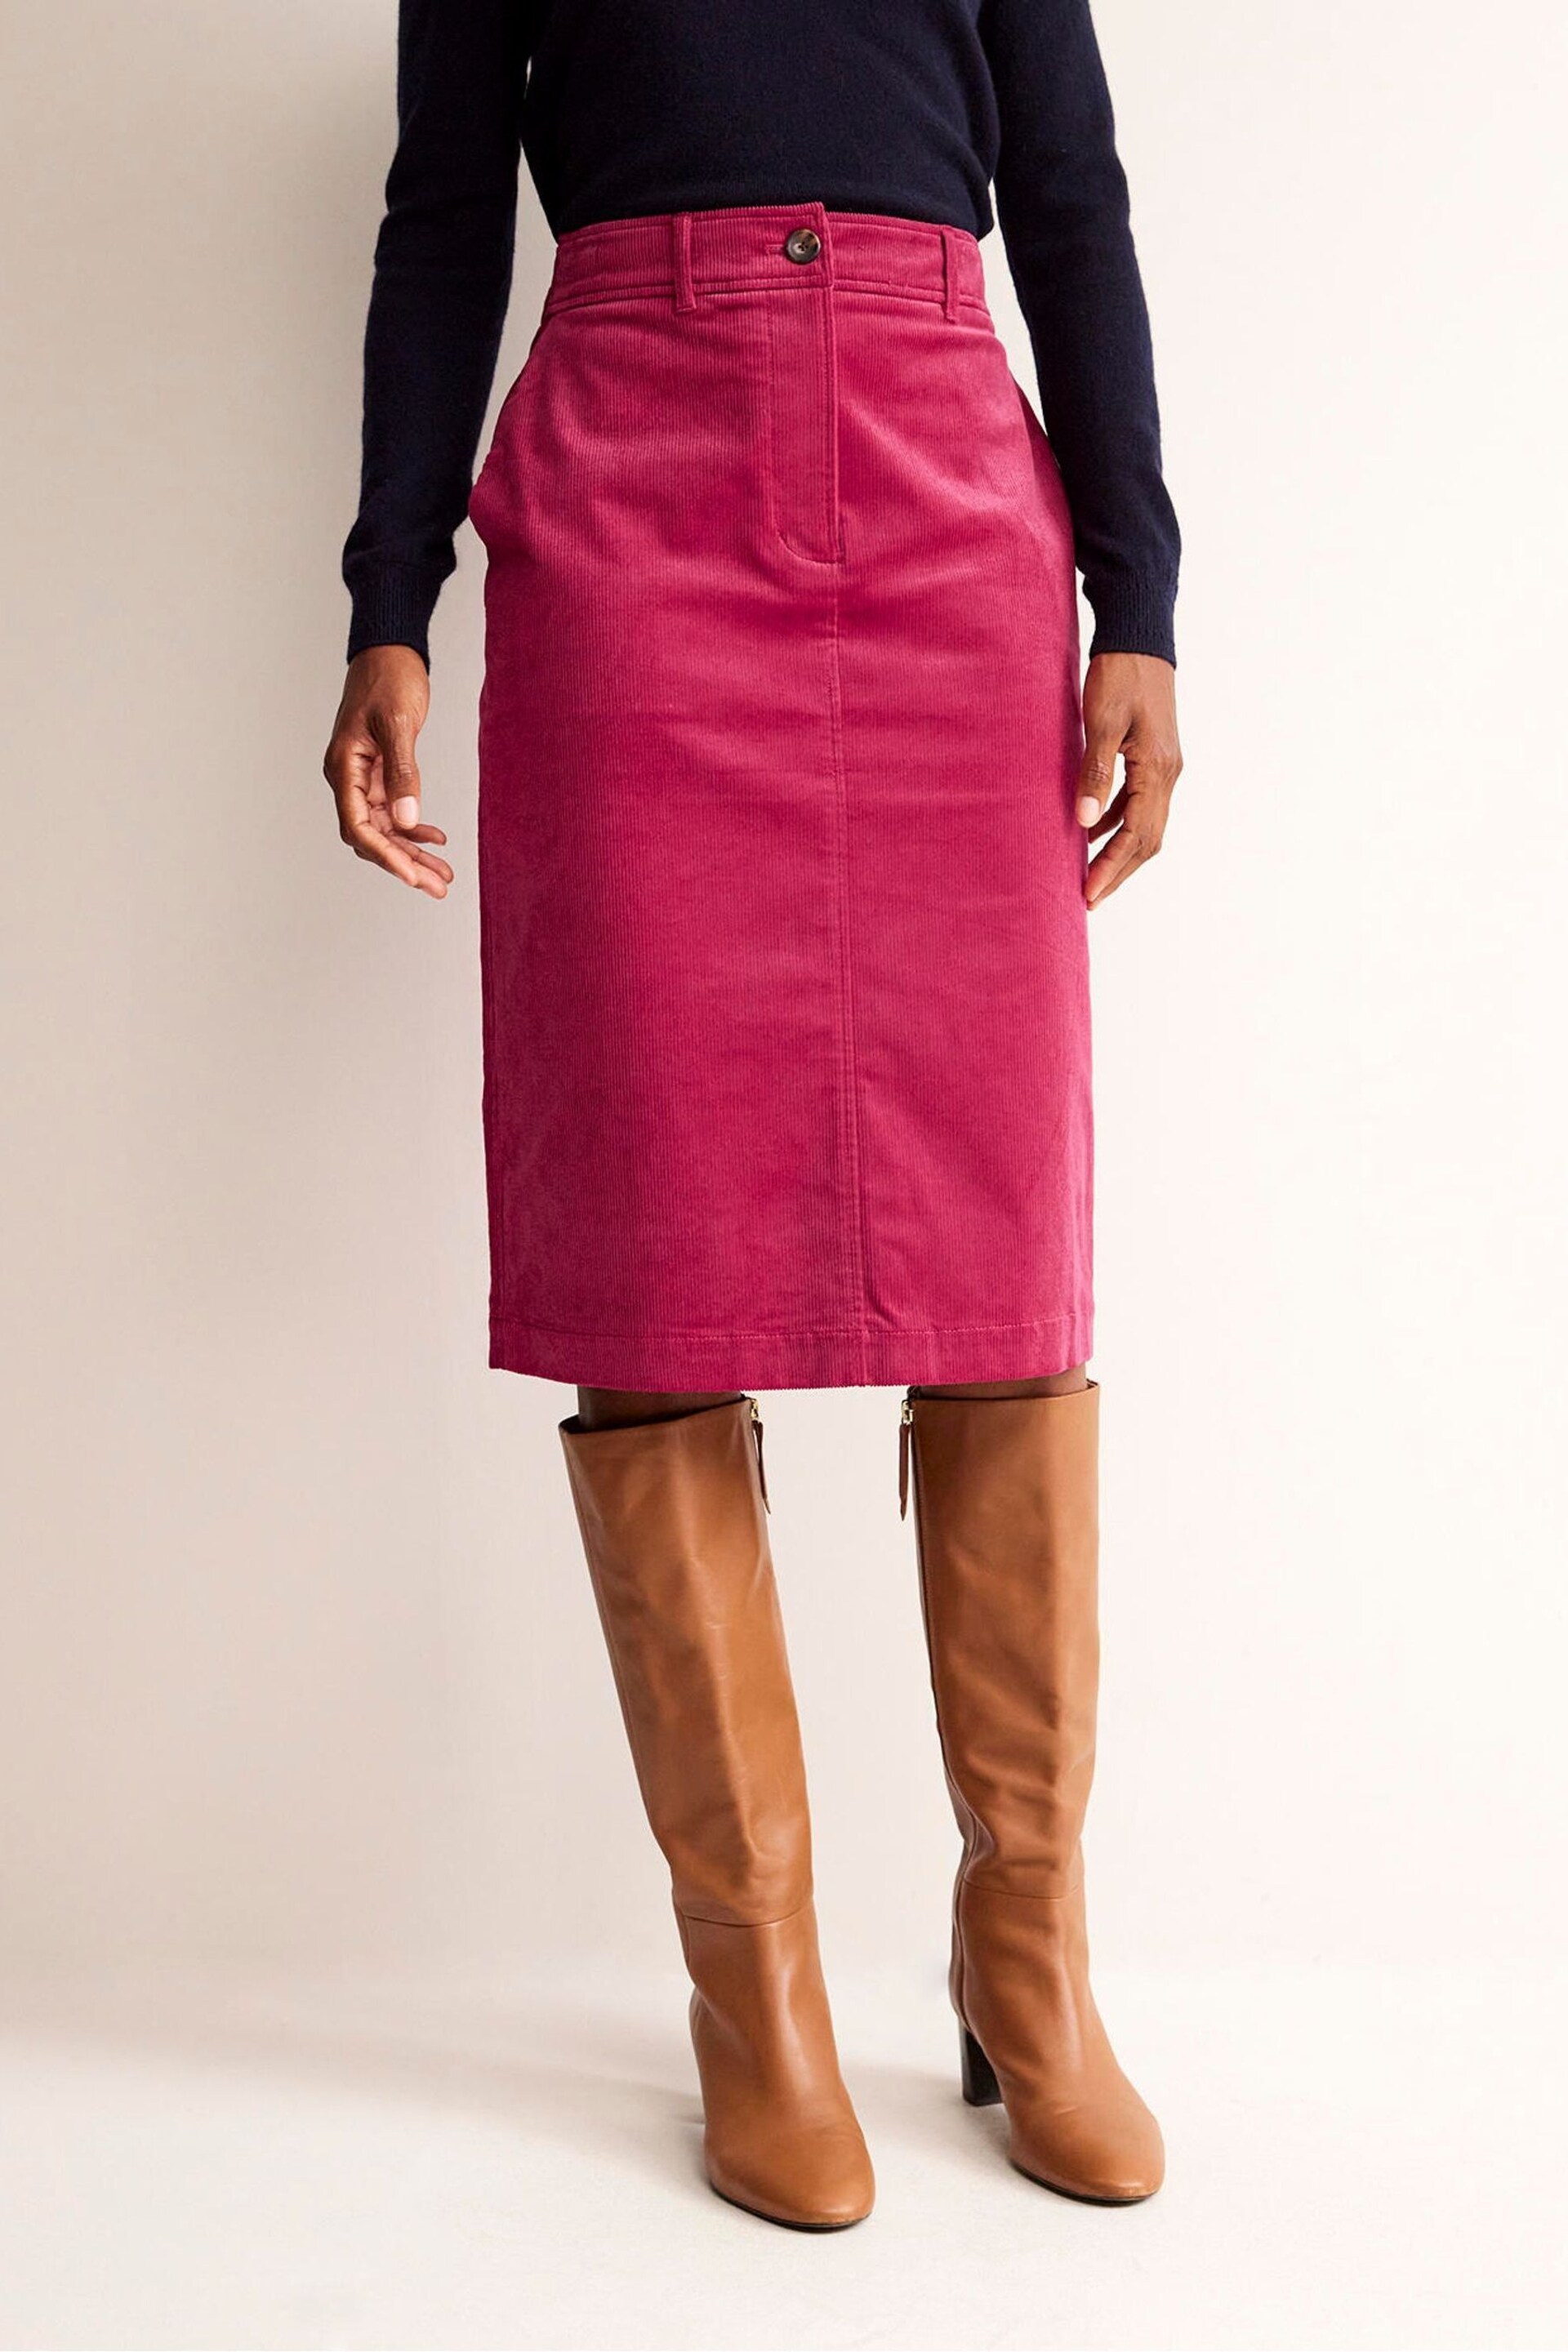 Boden Red Margot Cord Midi Skirt - Image 1 of 6